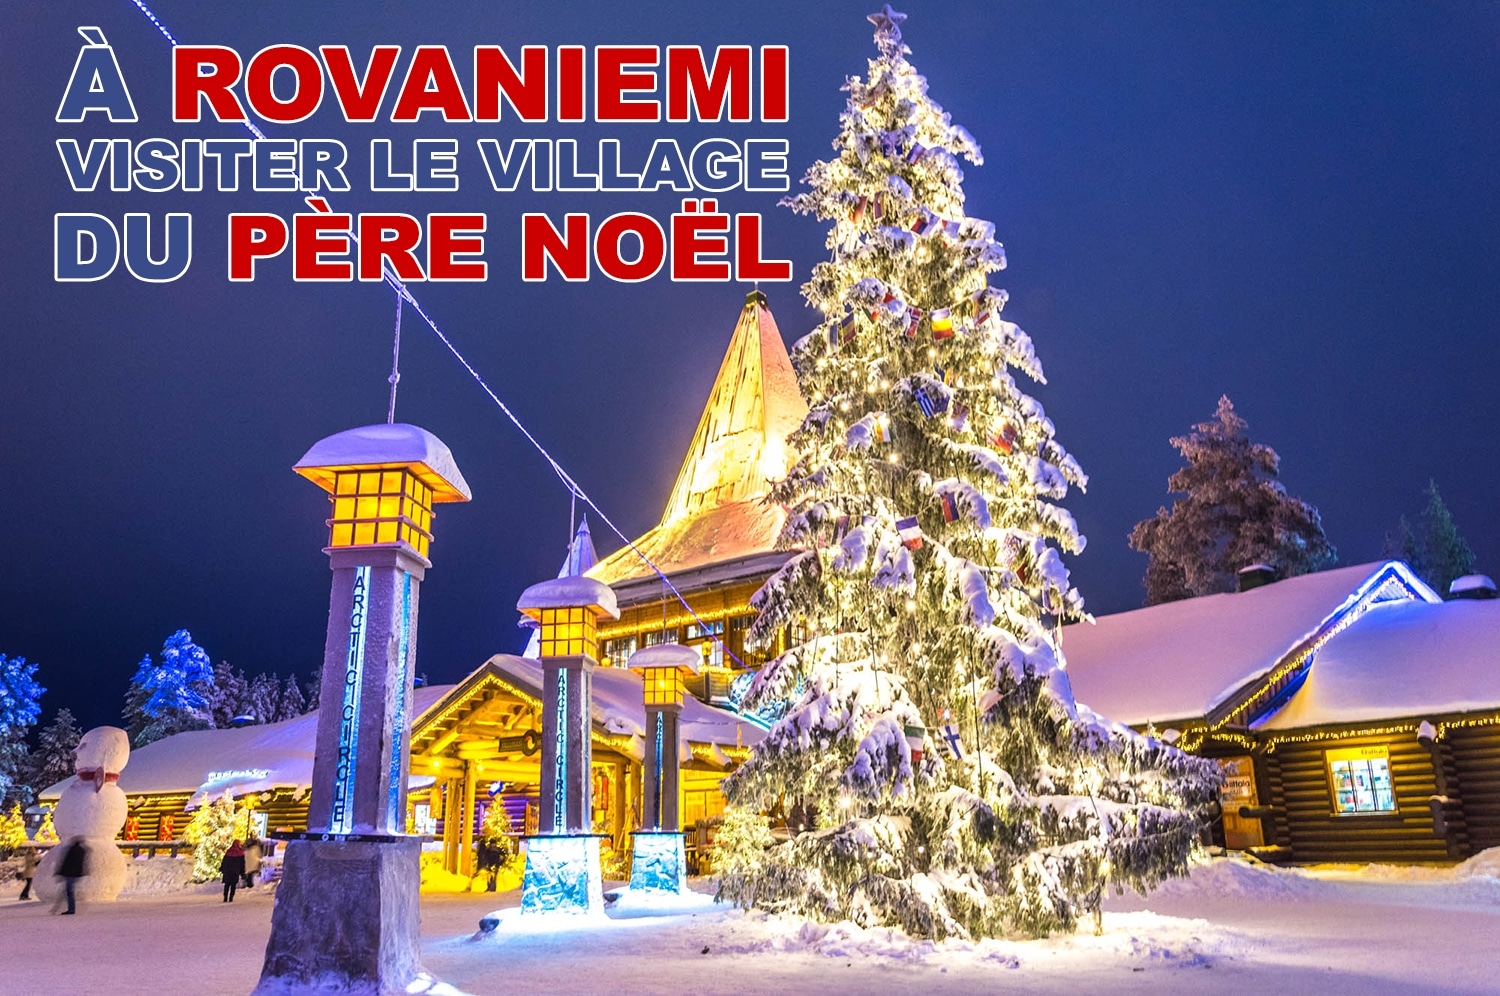 Visiter le village du père Noël à Rovaniemi